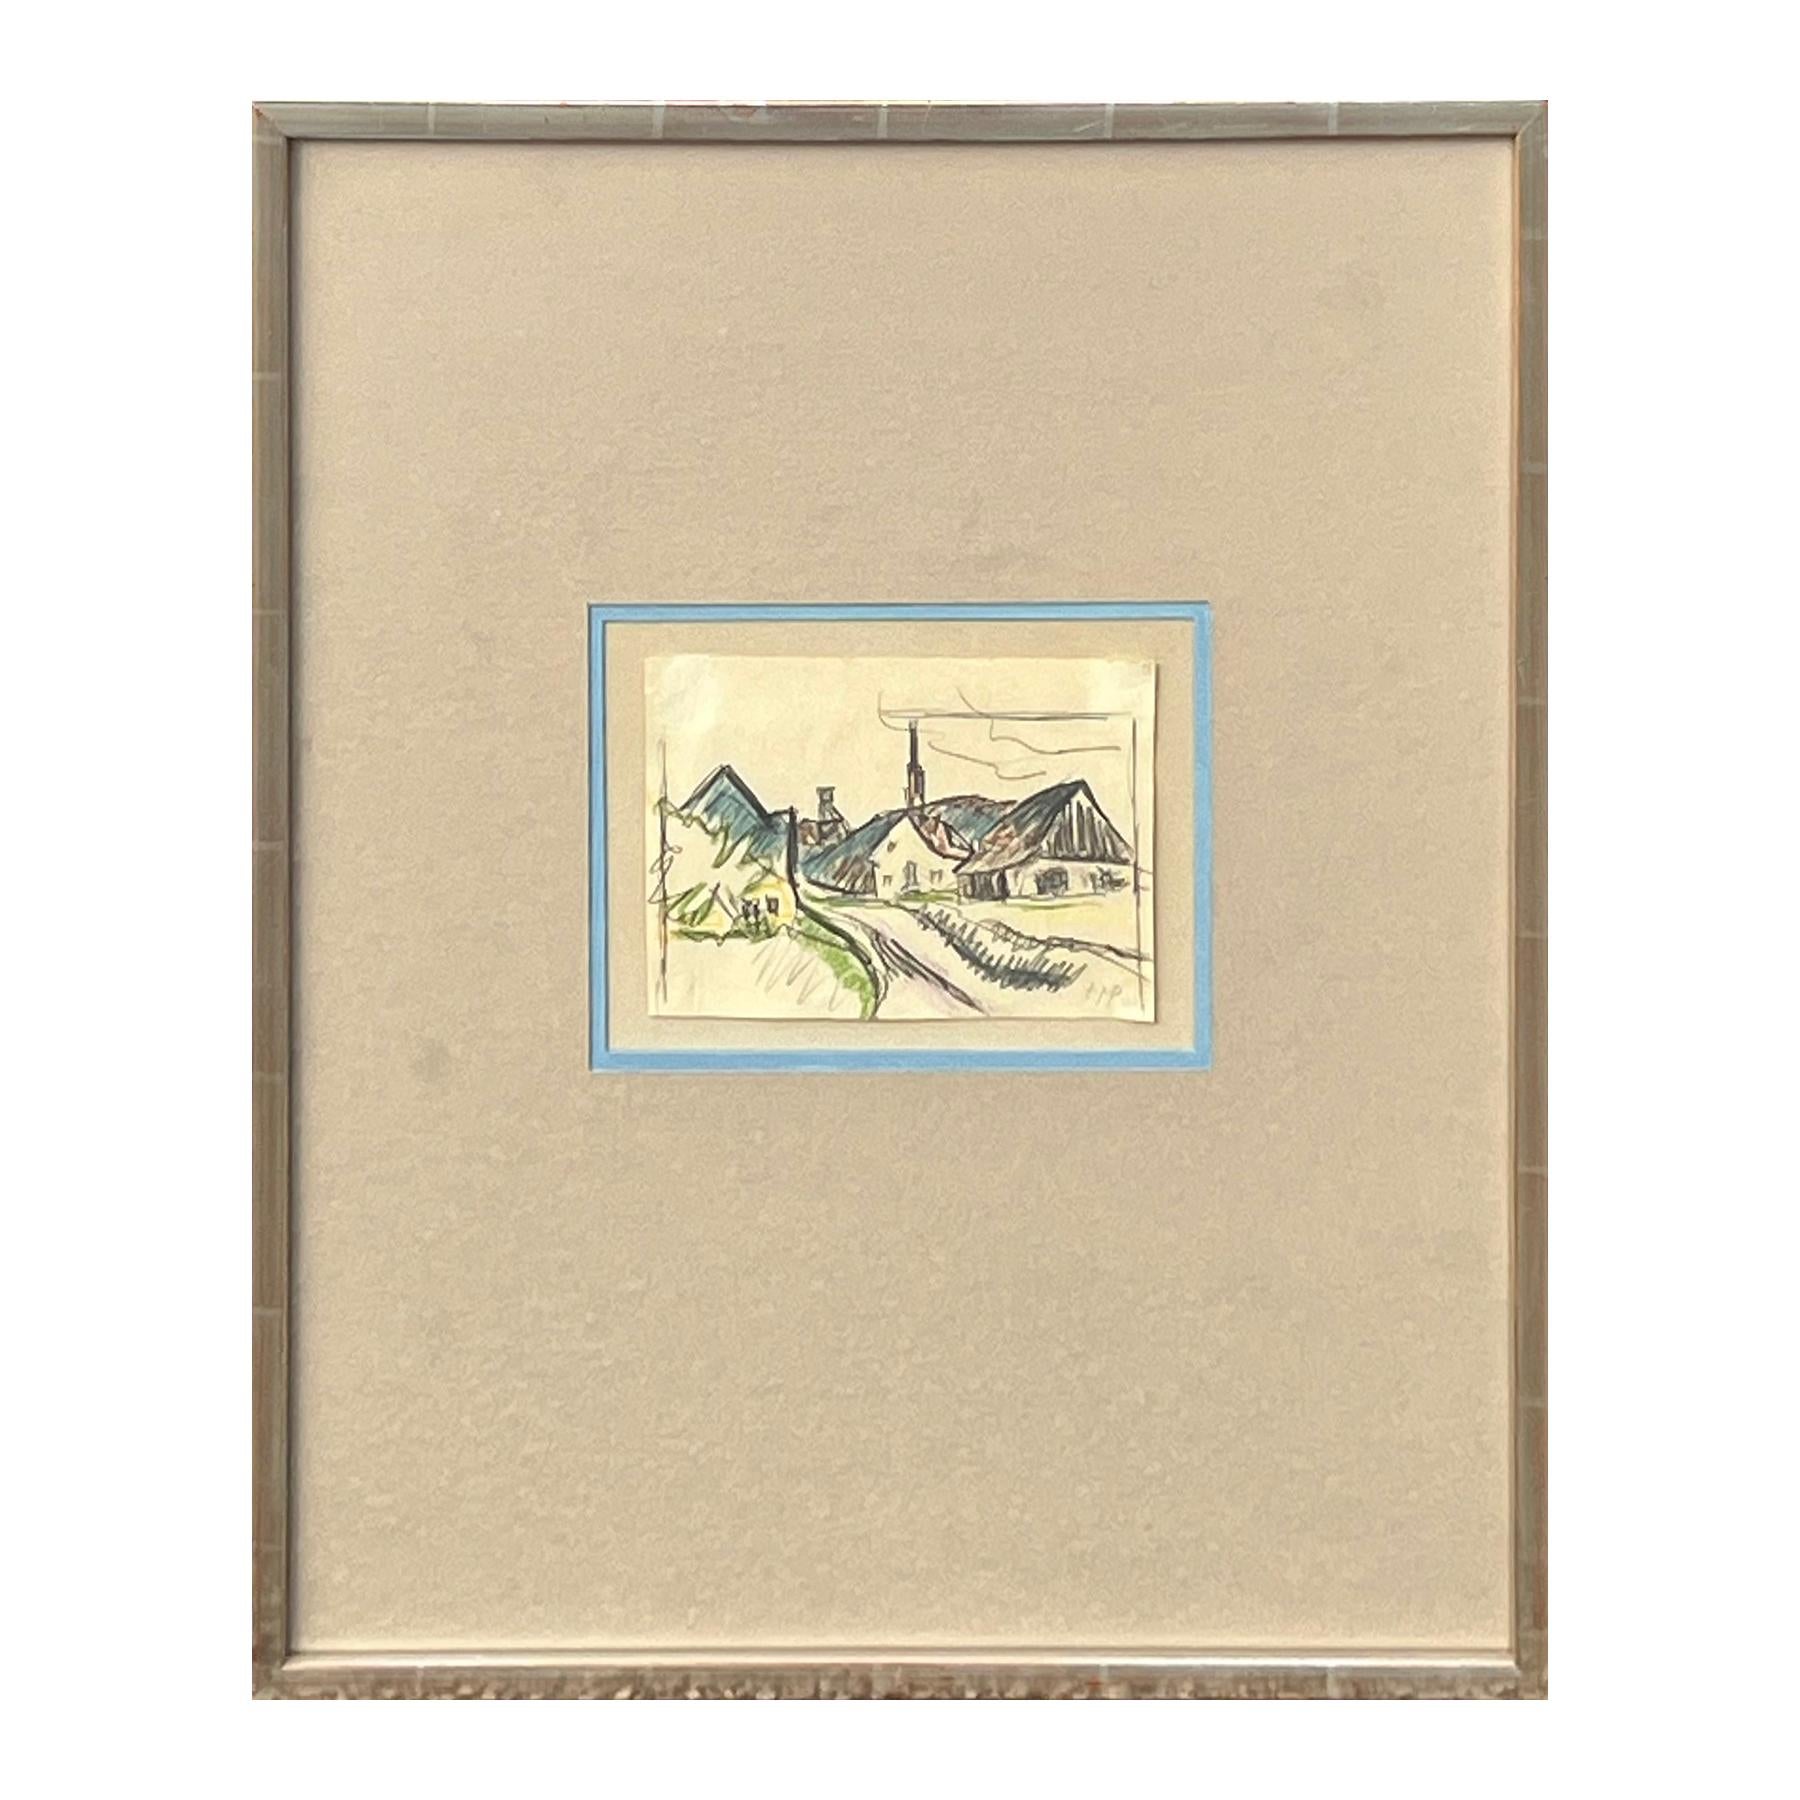 « View of Village », dessin de paysage abstrait gestuel et ancien moderne représentant des maisons  - Art de Herman Max Pechstein